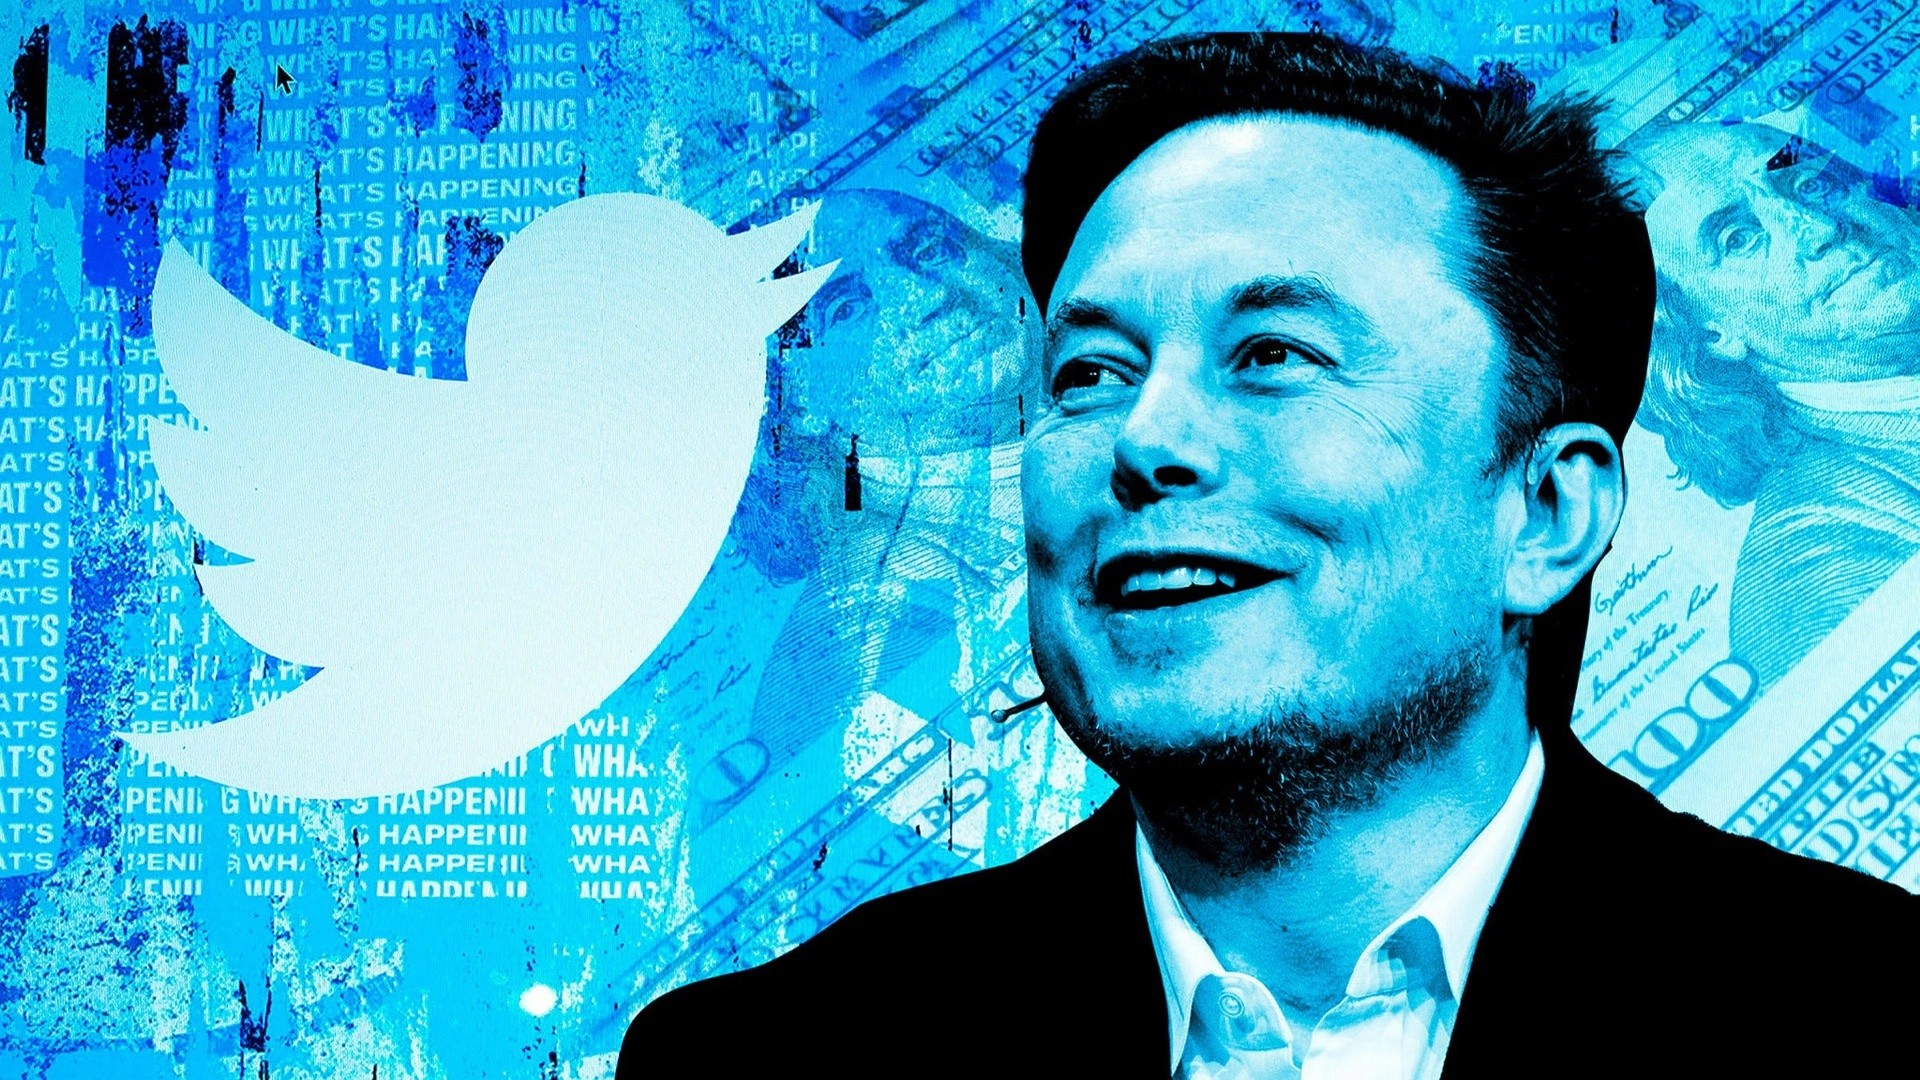 
Năm ngân hàng lớn và một công ty tài chính là những đơn vị đã đứng sau "chống lưng"&nbsp;cho Elon Musk trong thương vụ trị giá 44 tỷ USD với Twitter.
